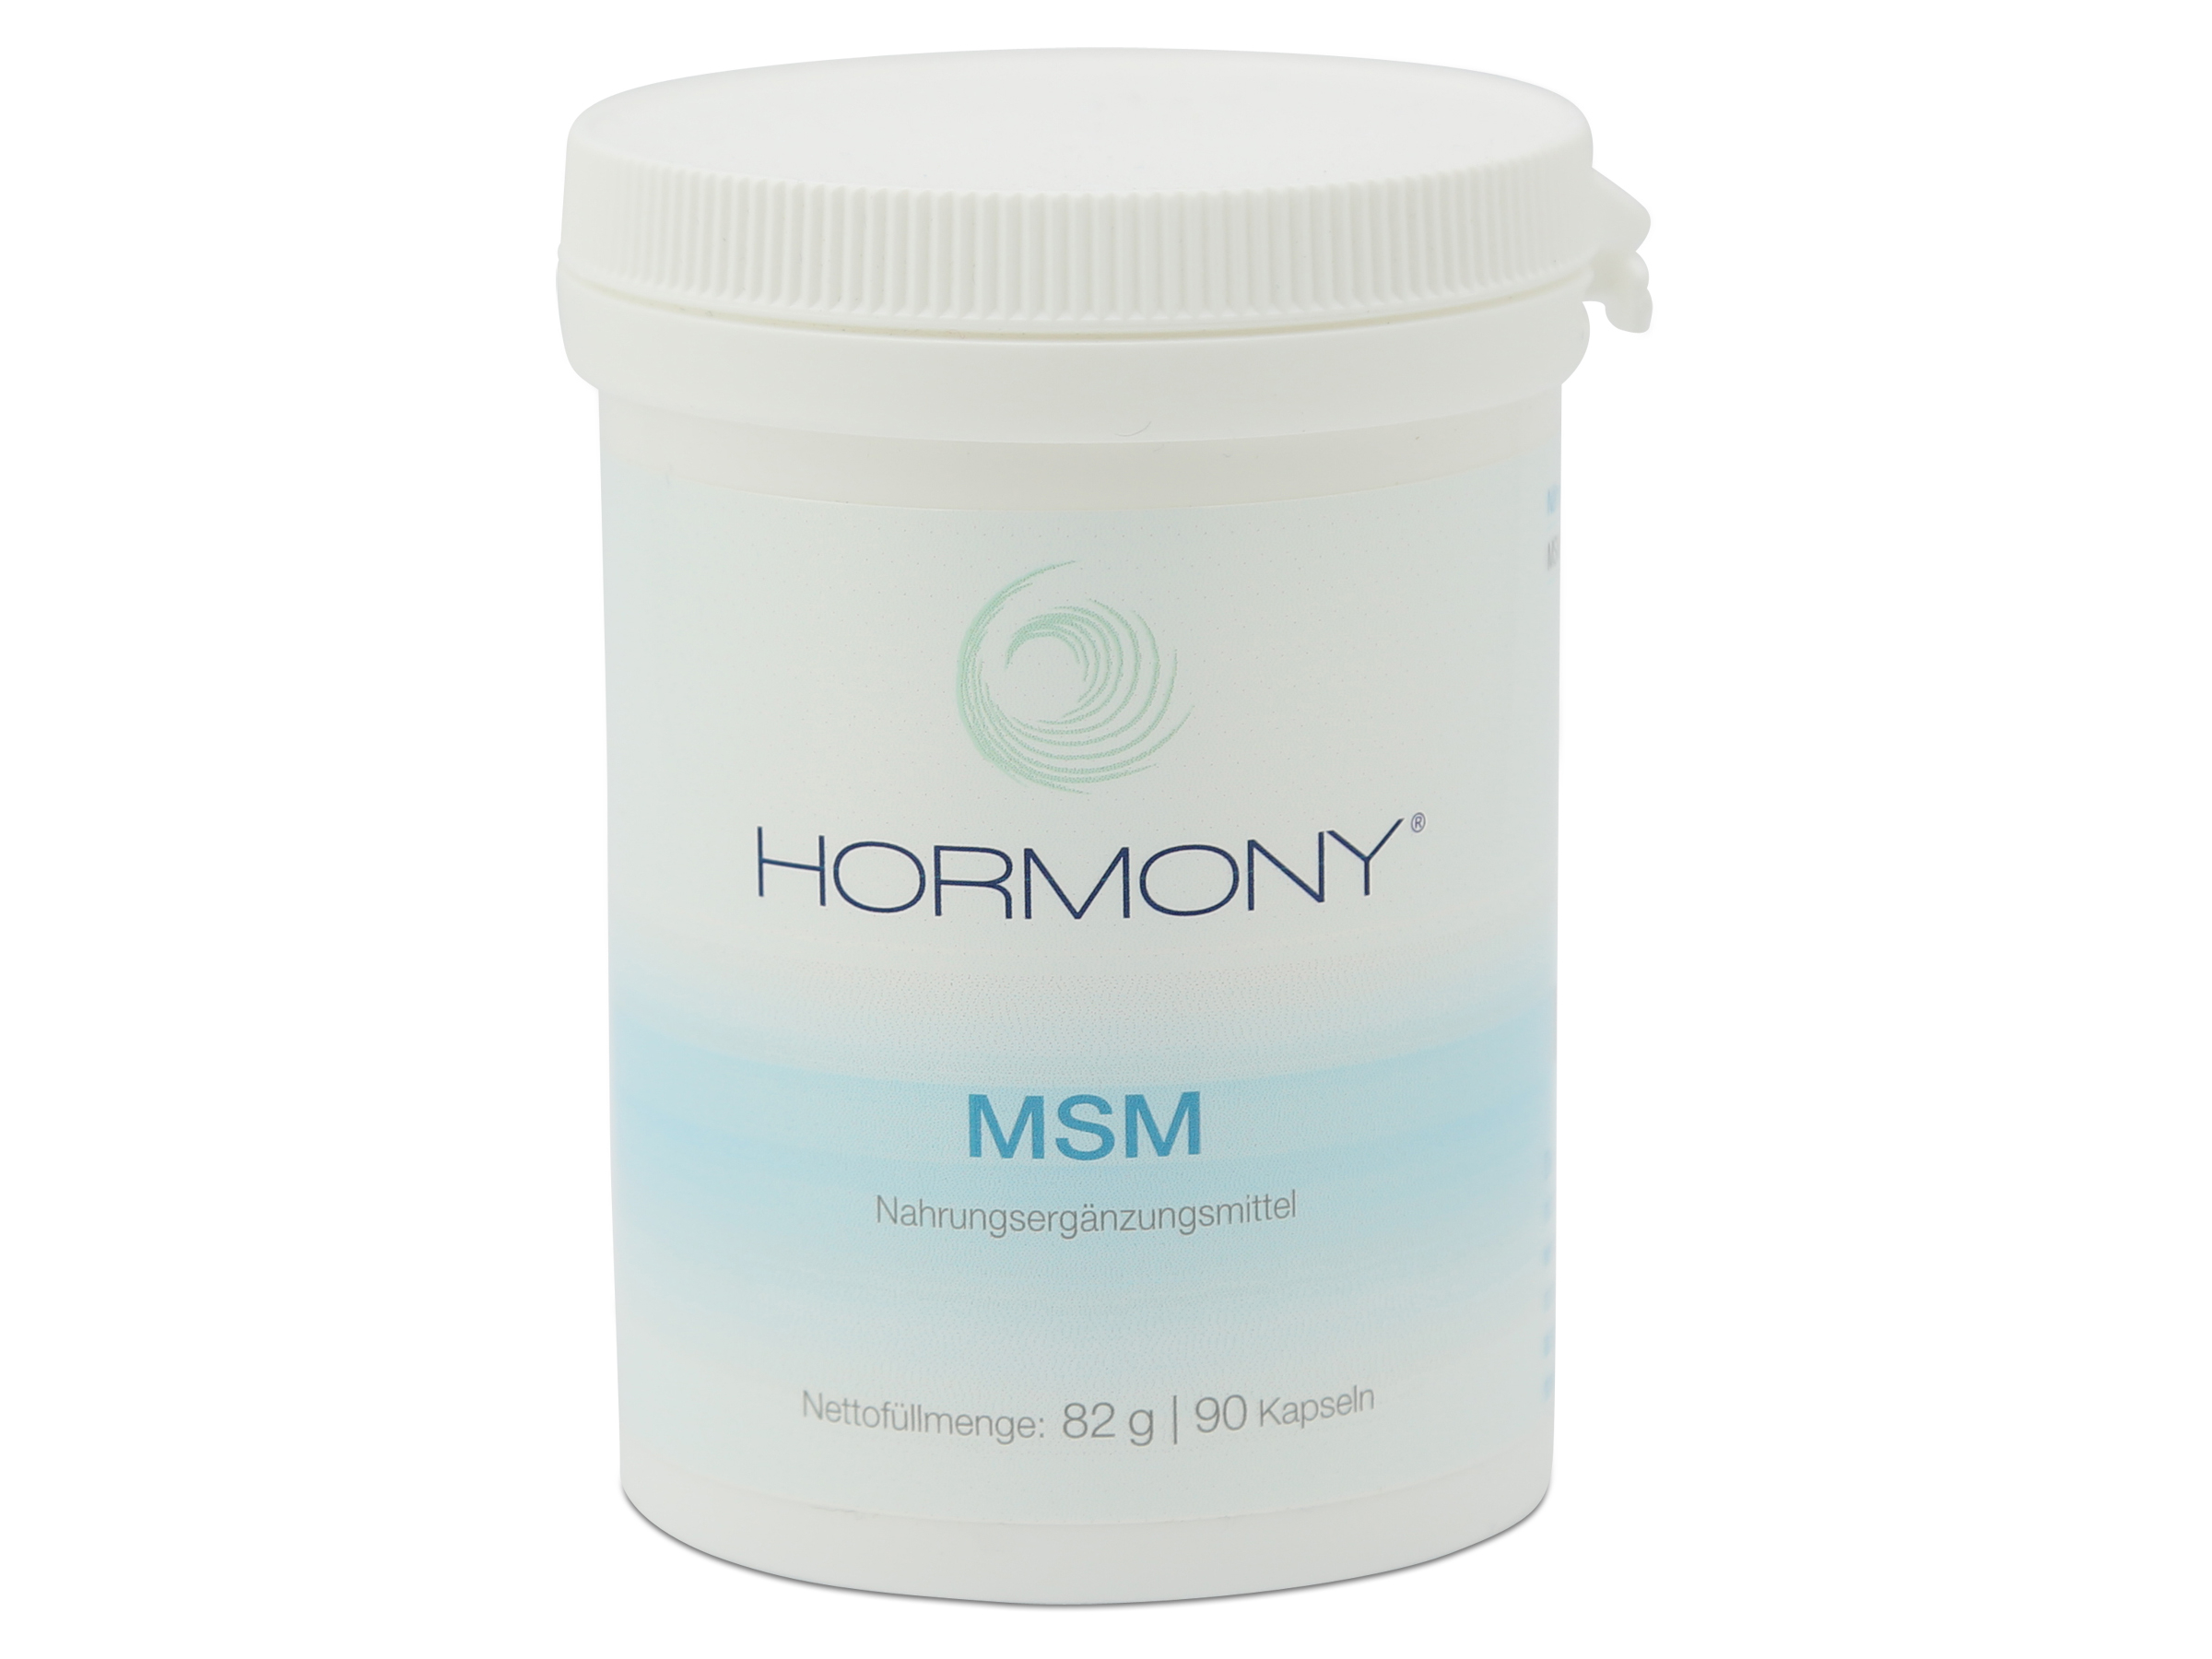 Hormony MSM | 90 Kapseln 82 g